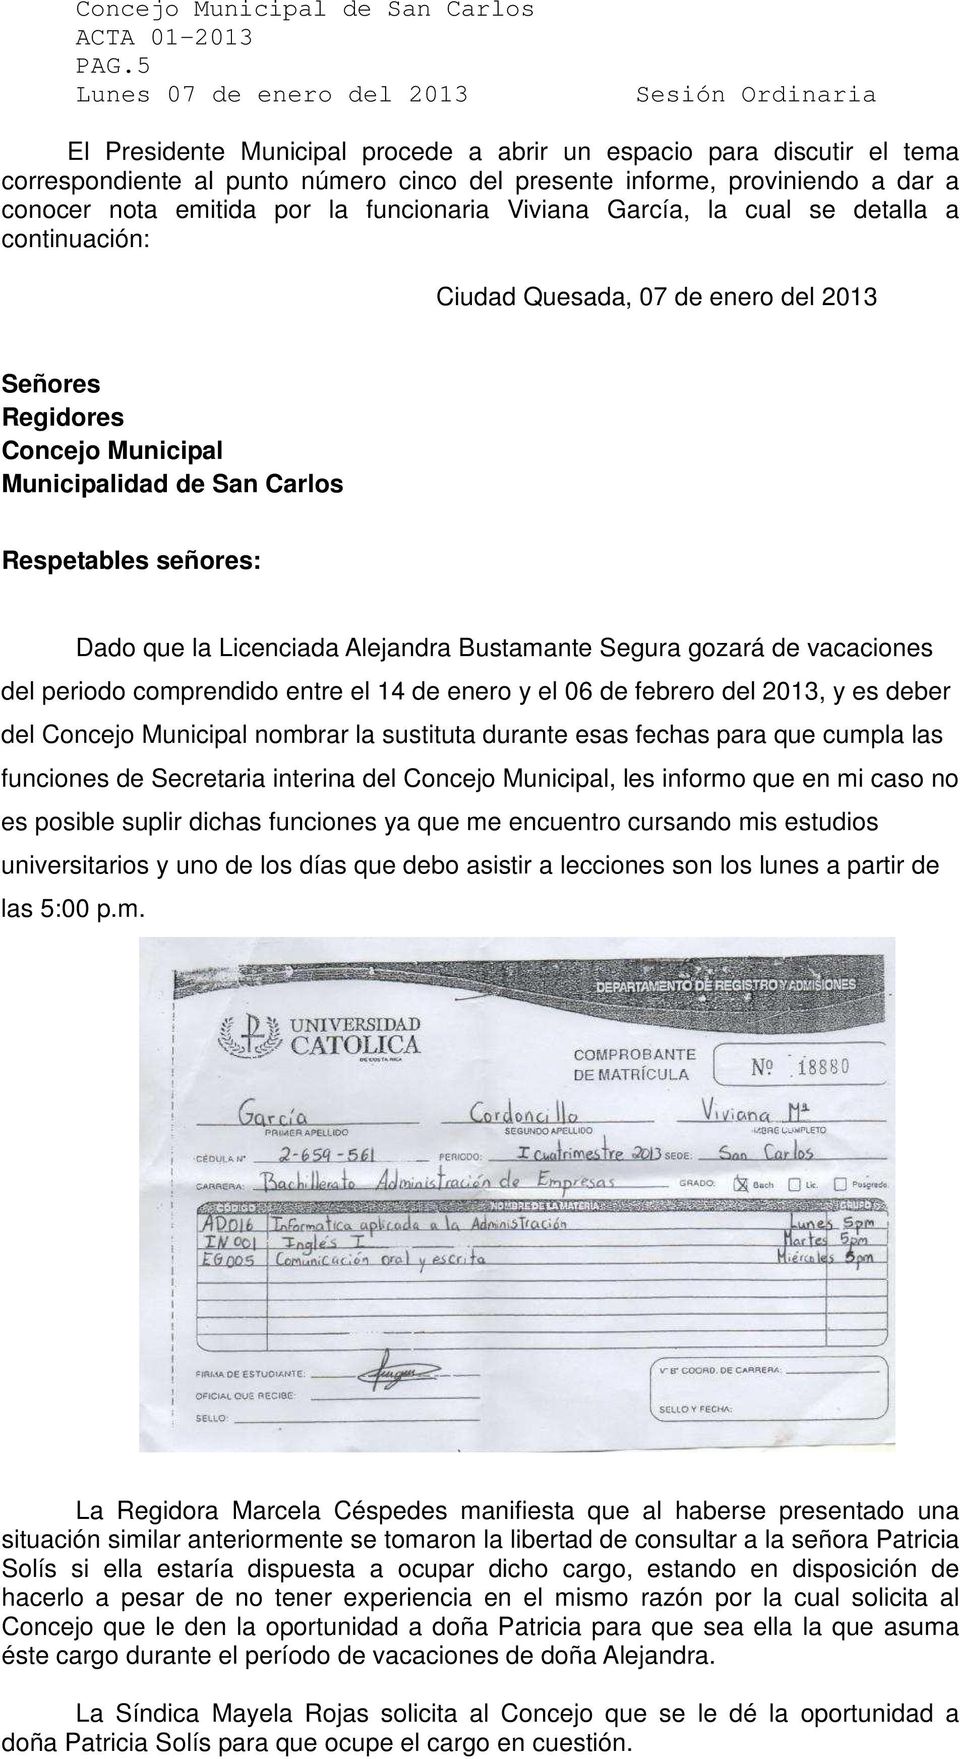 Alejandra Bustamante Segura gozará de vacaciones del periodo comprendido entre el 14 de enero y el 06 de febrero del 2013, y es deber del Concejo Municipal nombrar la sustituta durante esas fechas